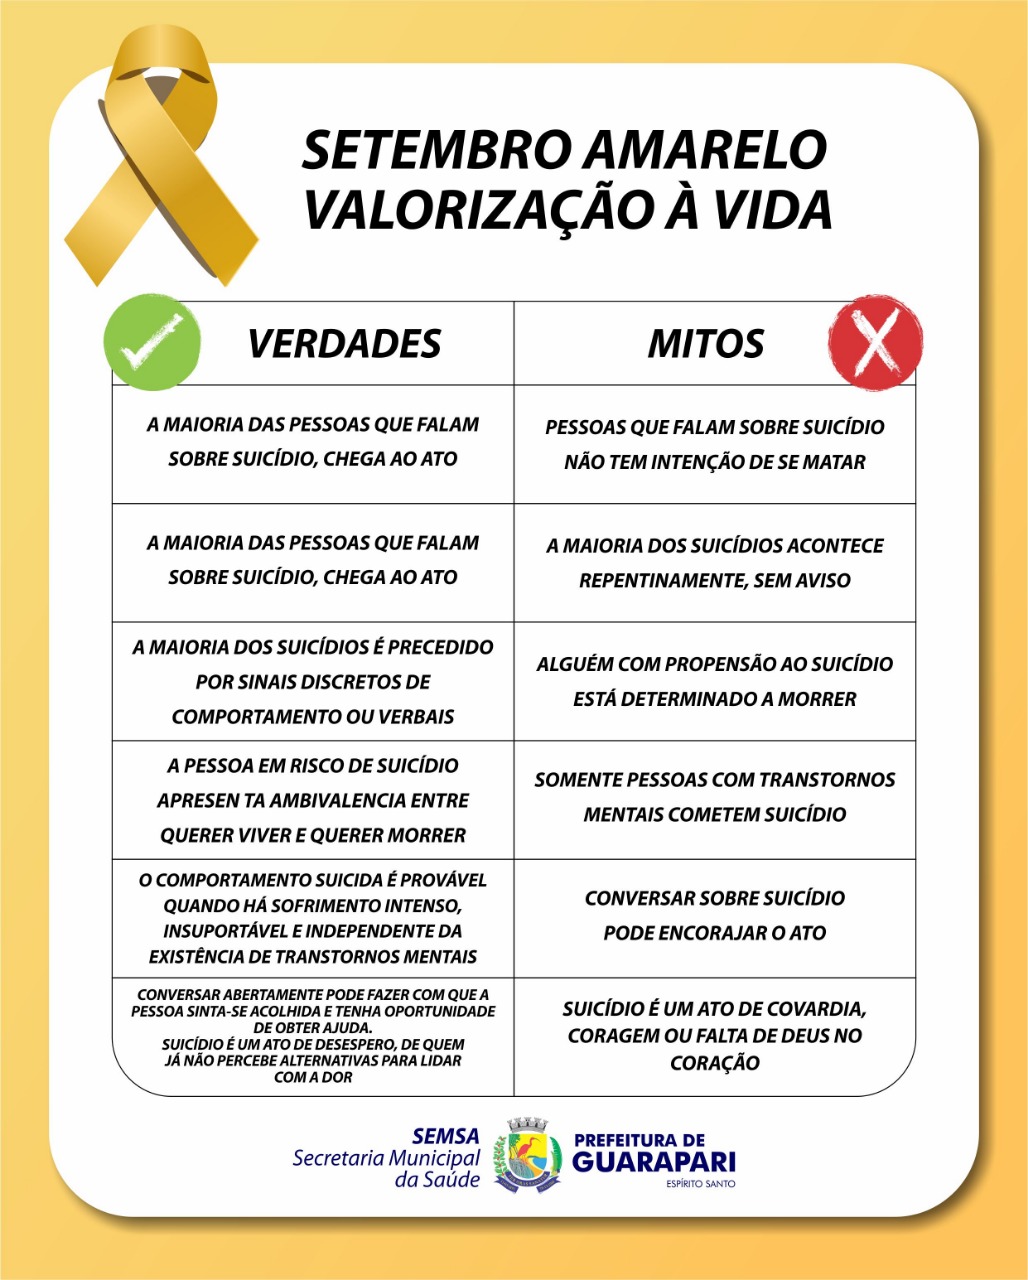 Prefeitura de Guarapari realiza programação da Campanha Setembro Amarelo 